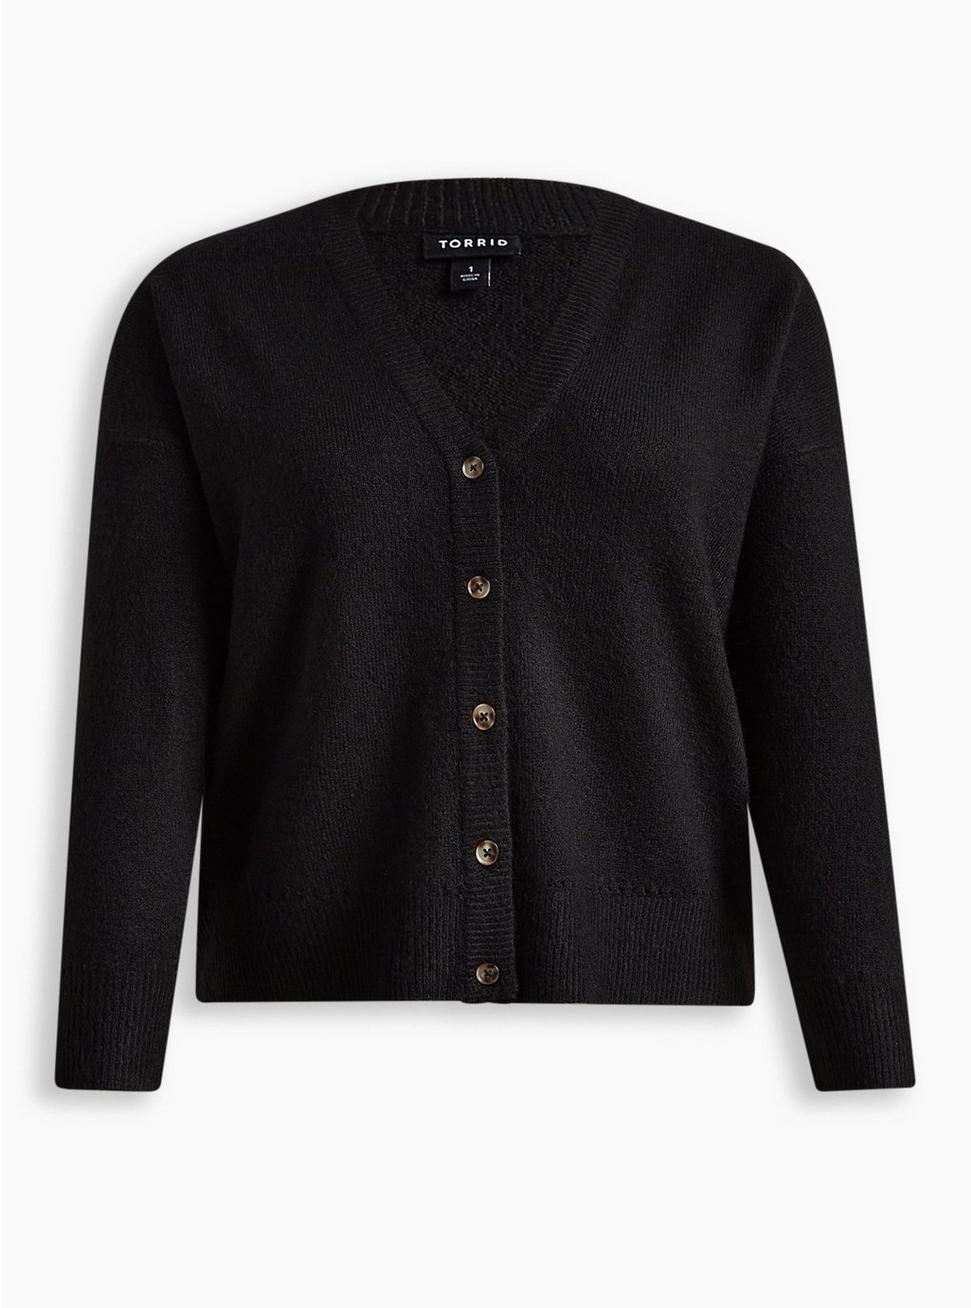 Plus Size - Vegan Cashmere Cardigan V-Neck Drop Shoulder Sweater - Torrid